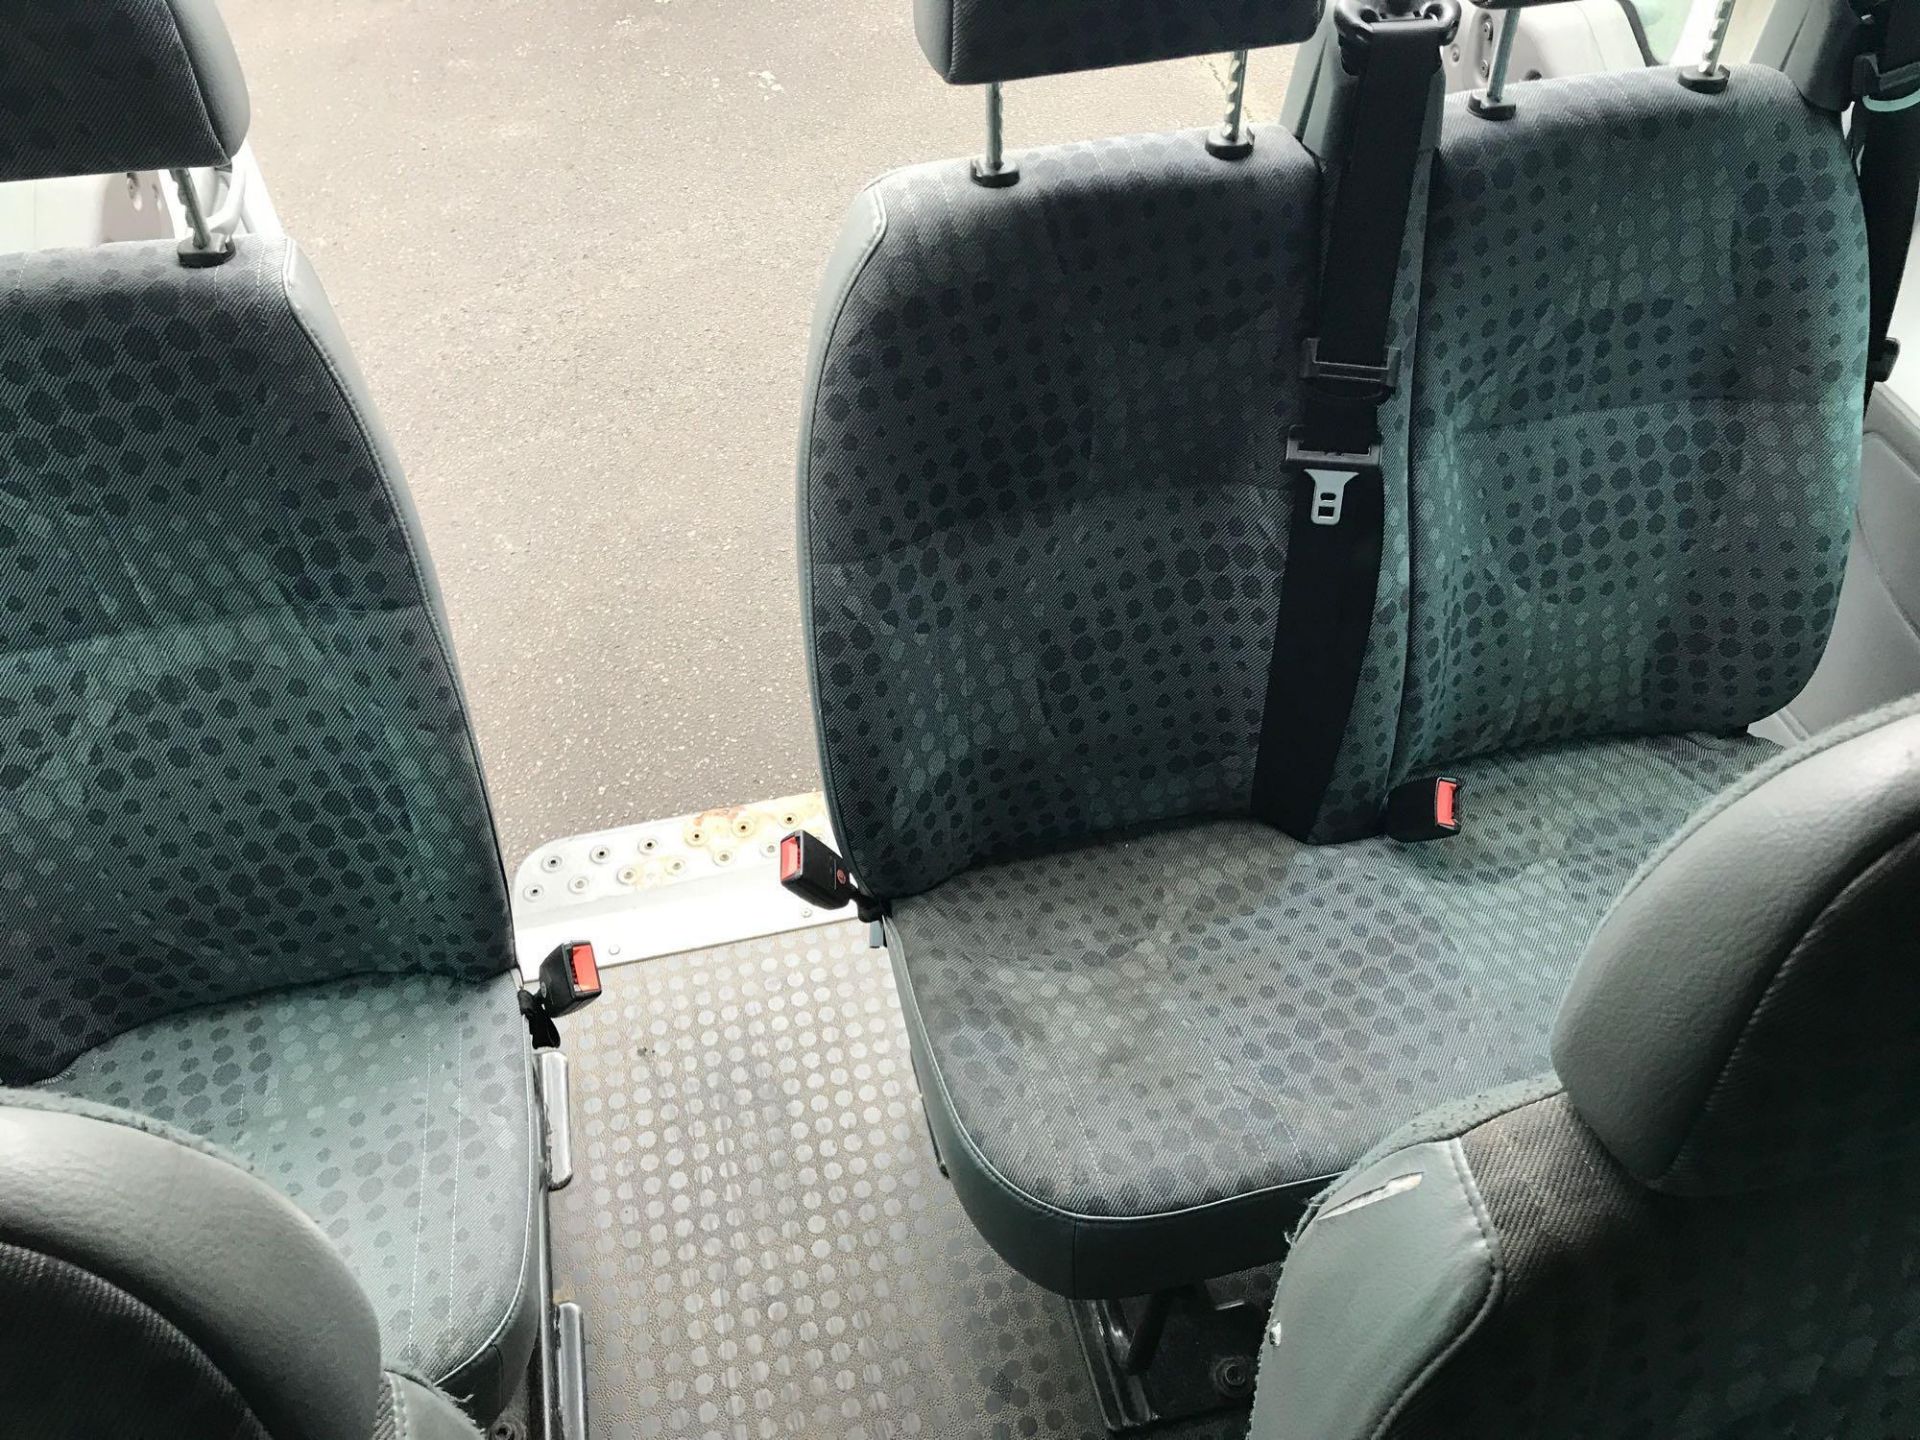 Ford Transit 16 Seat, Manual, Mini Bus - Image 15 of 20